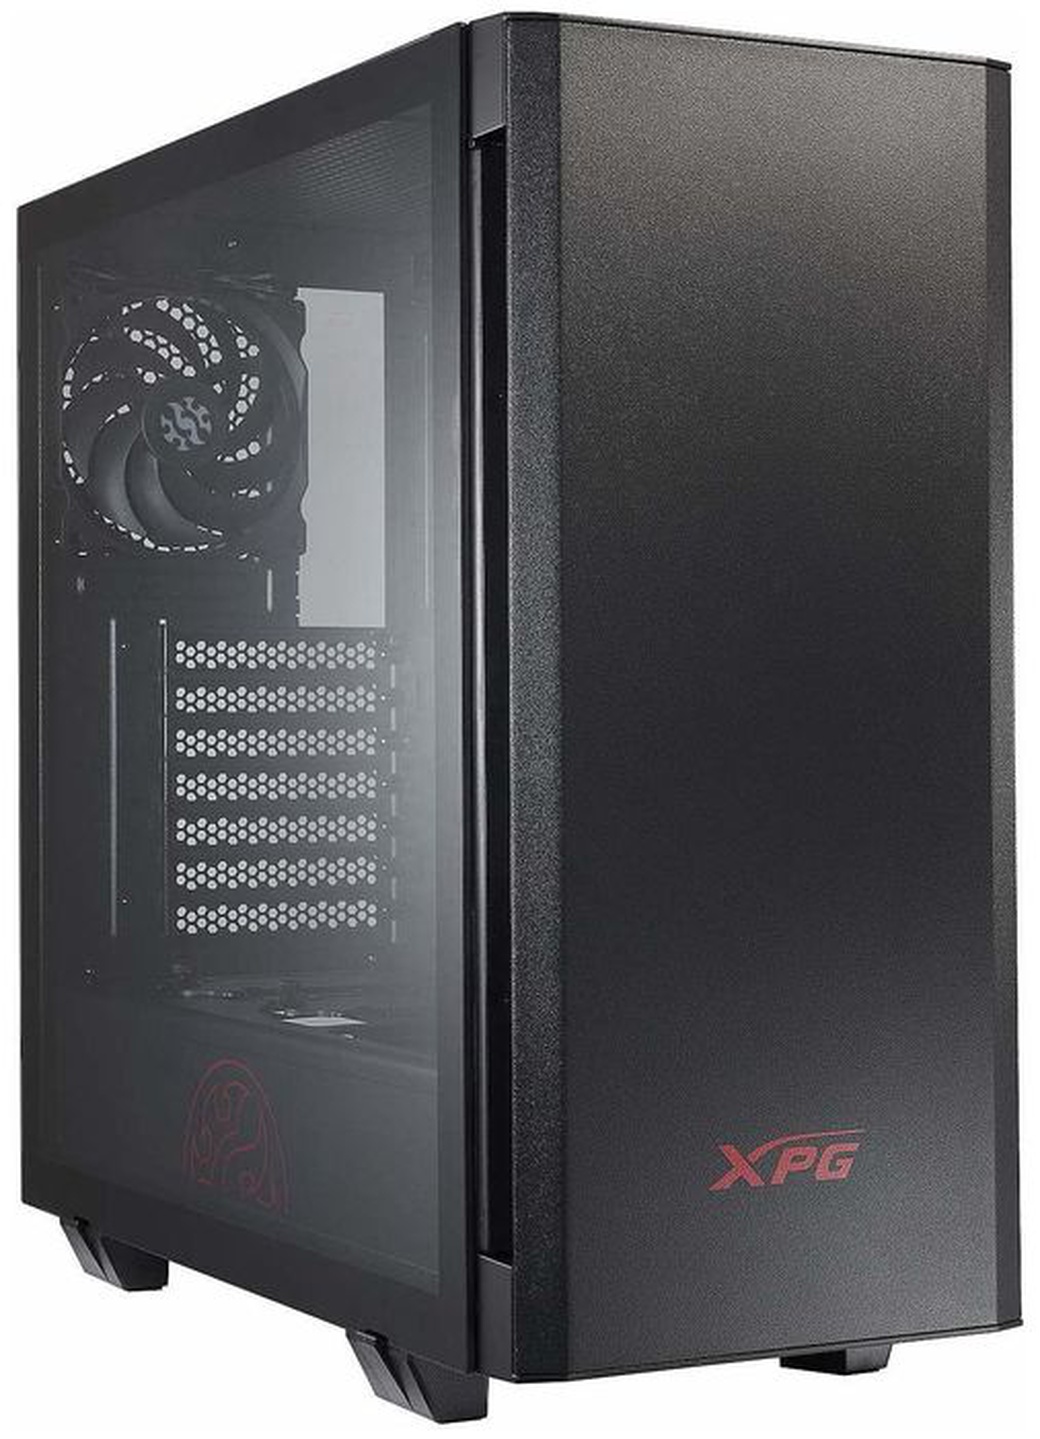 Компьютерный корпус XPG INVADER, черный фото